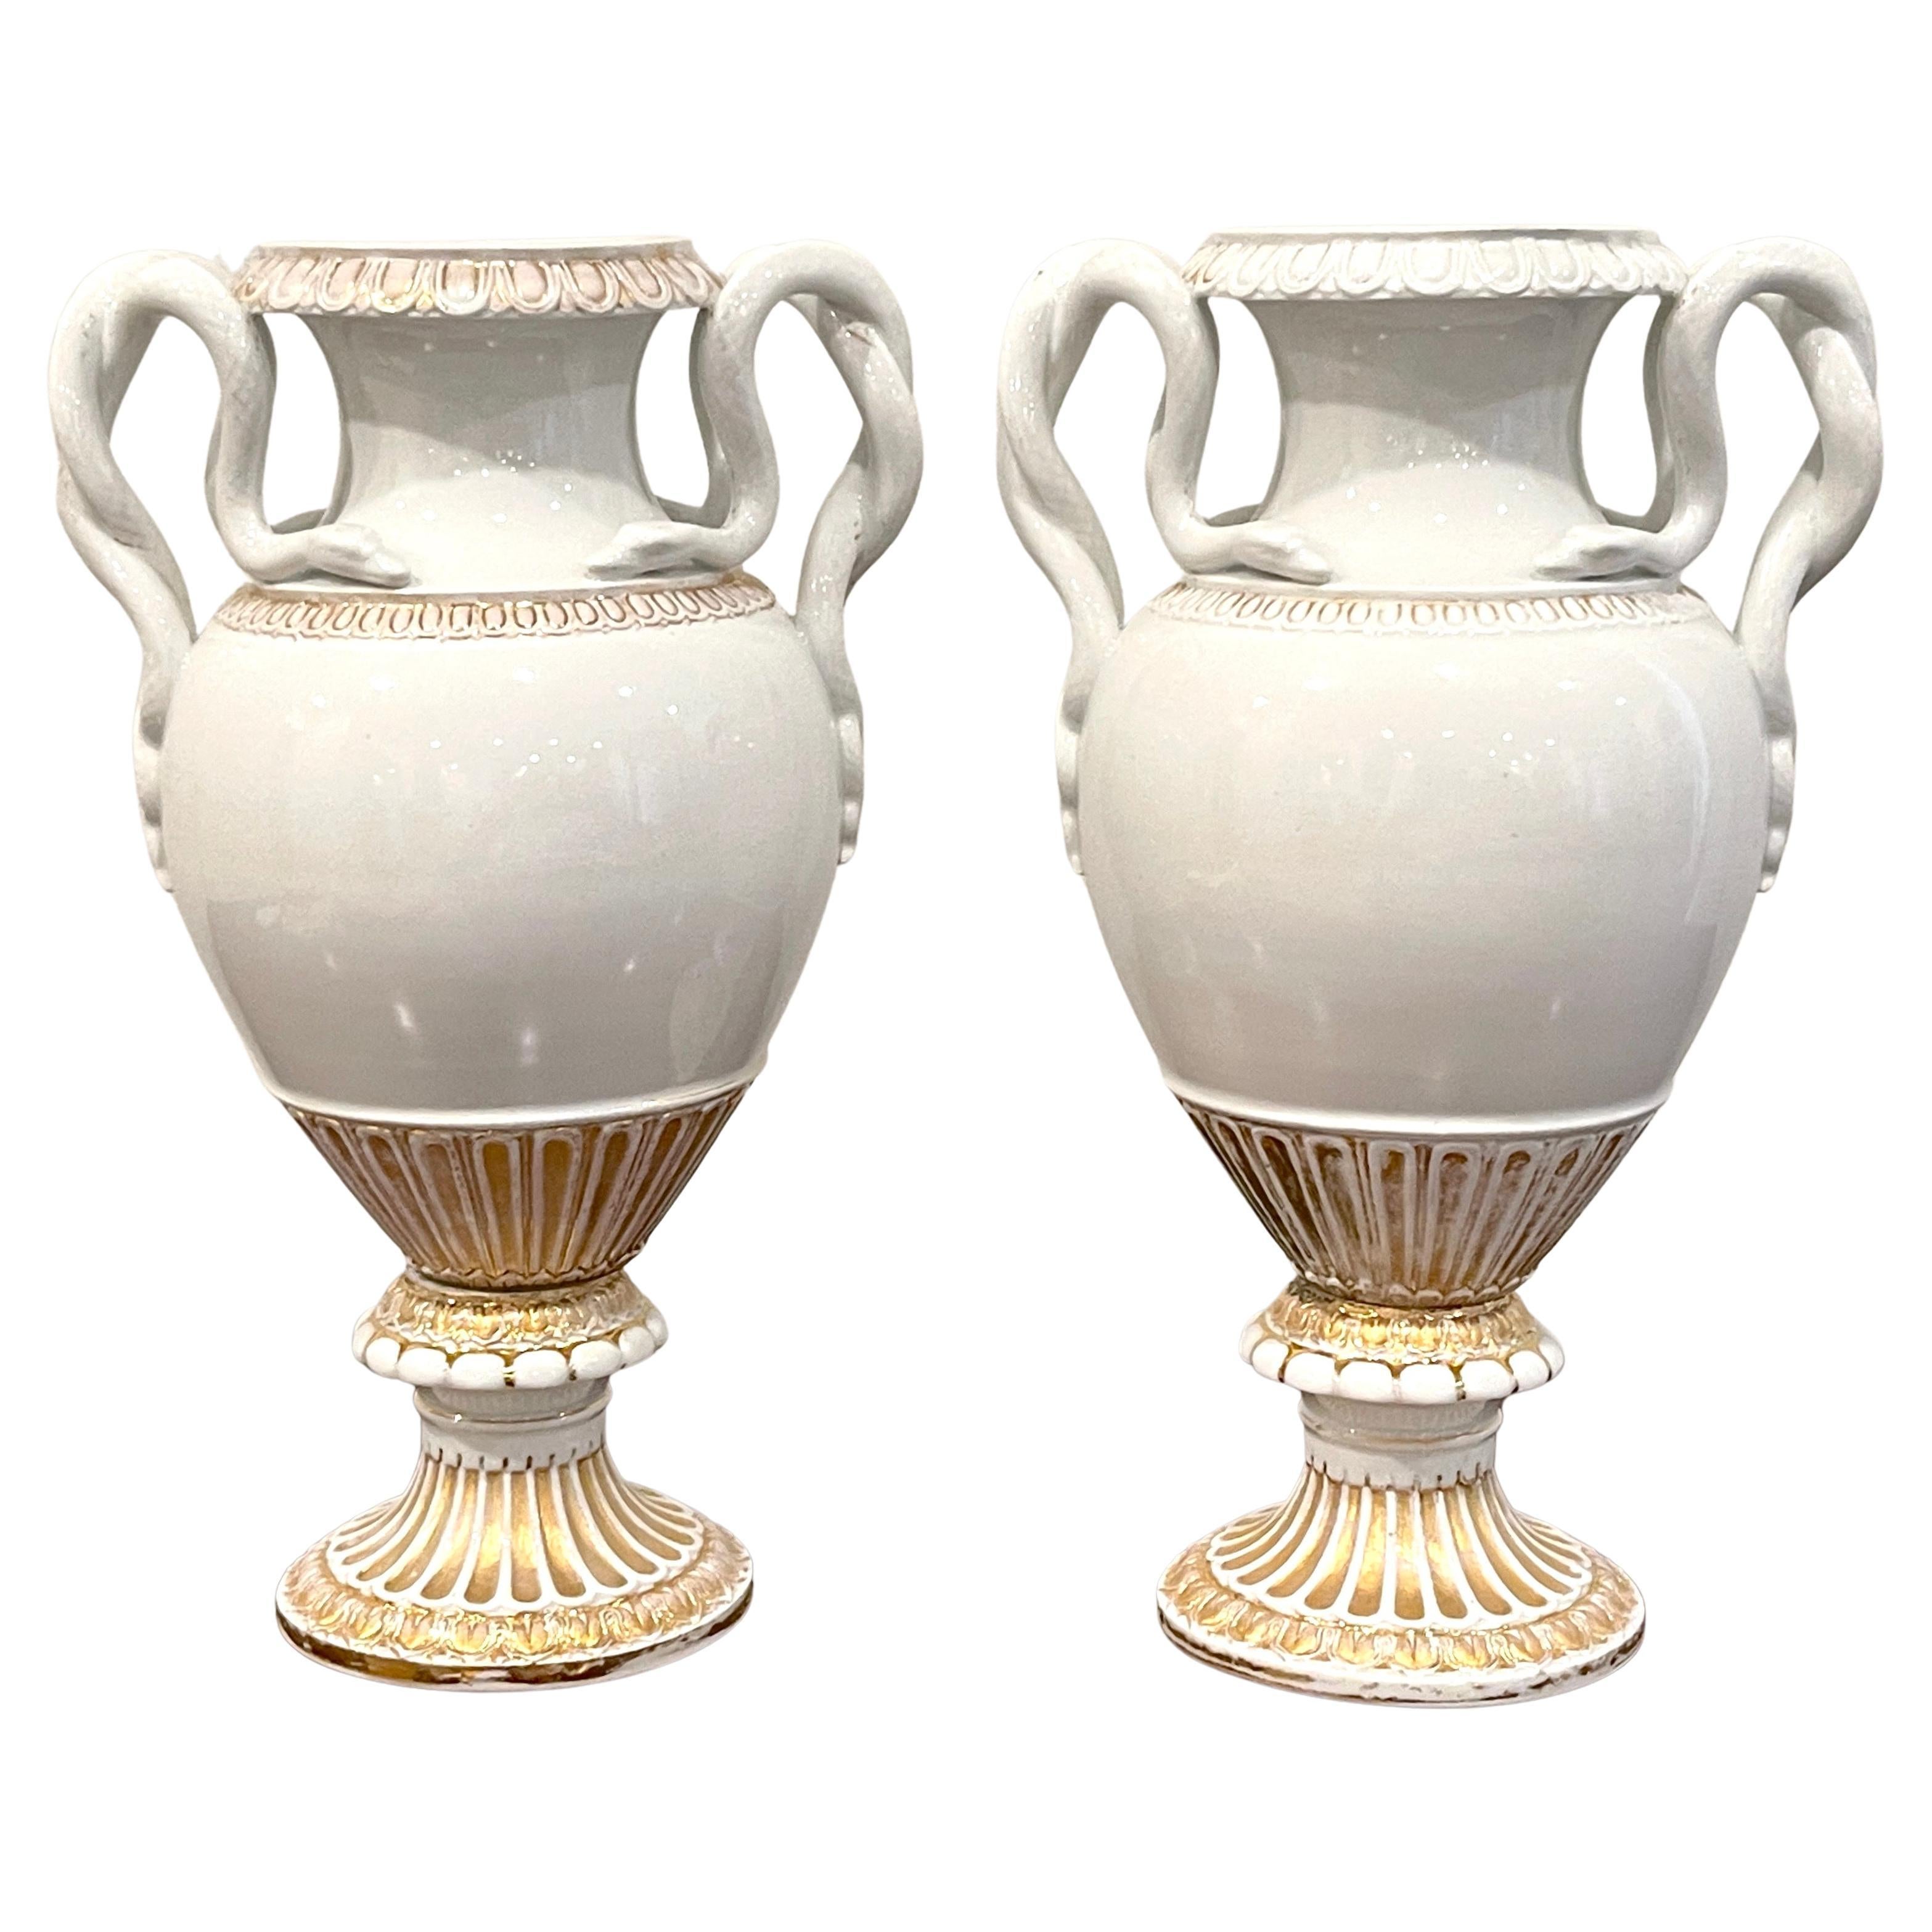 Paar neoklassizistische Meissener Vasen mit Schlangengriff aus dem 19. Jahrhundert in Gold und Weiß